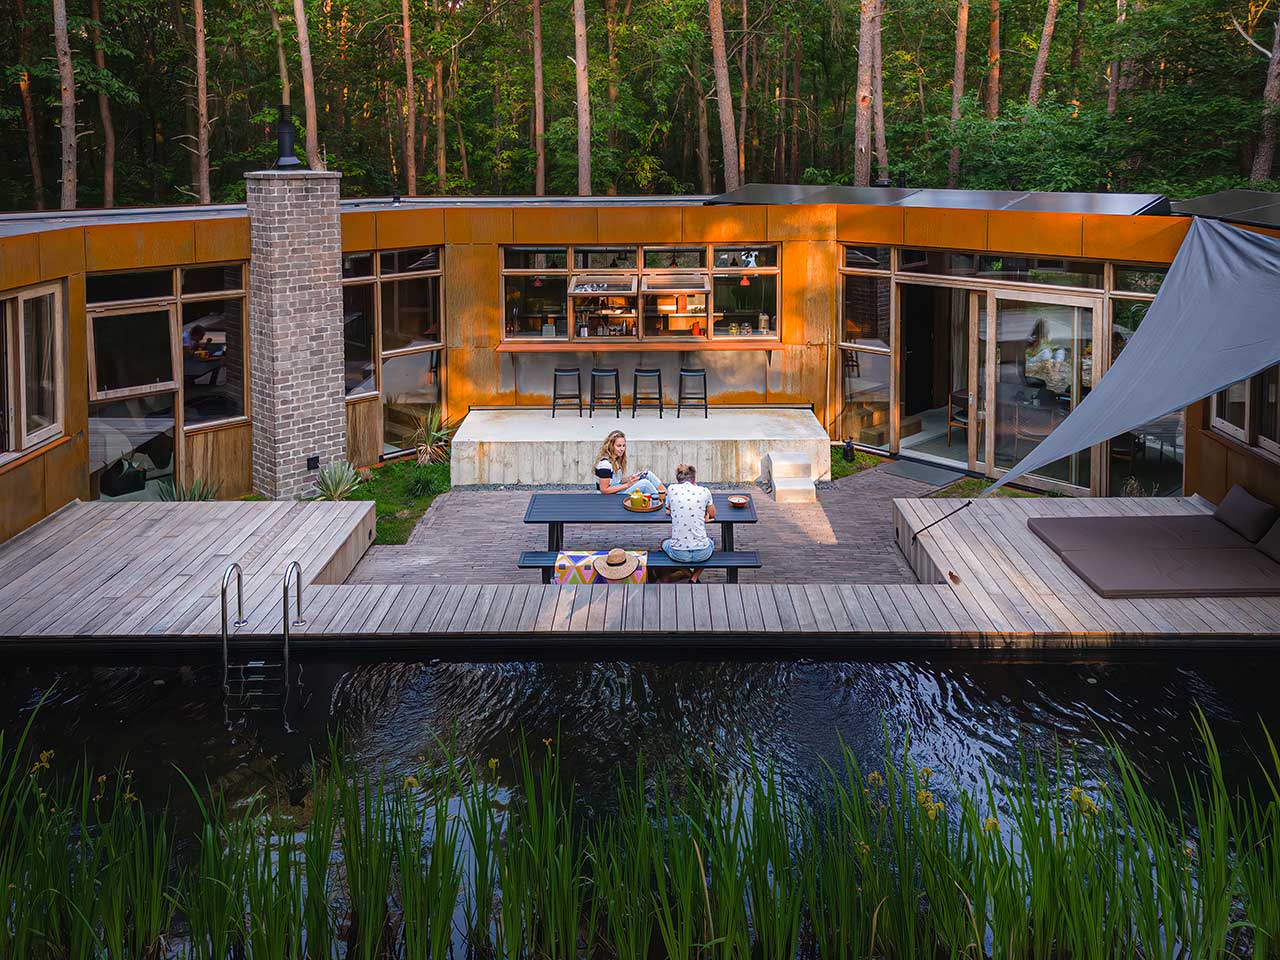 The C House: A Hidden, Half-Hexagonal Gem in the Dutch Forest